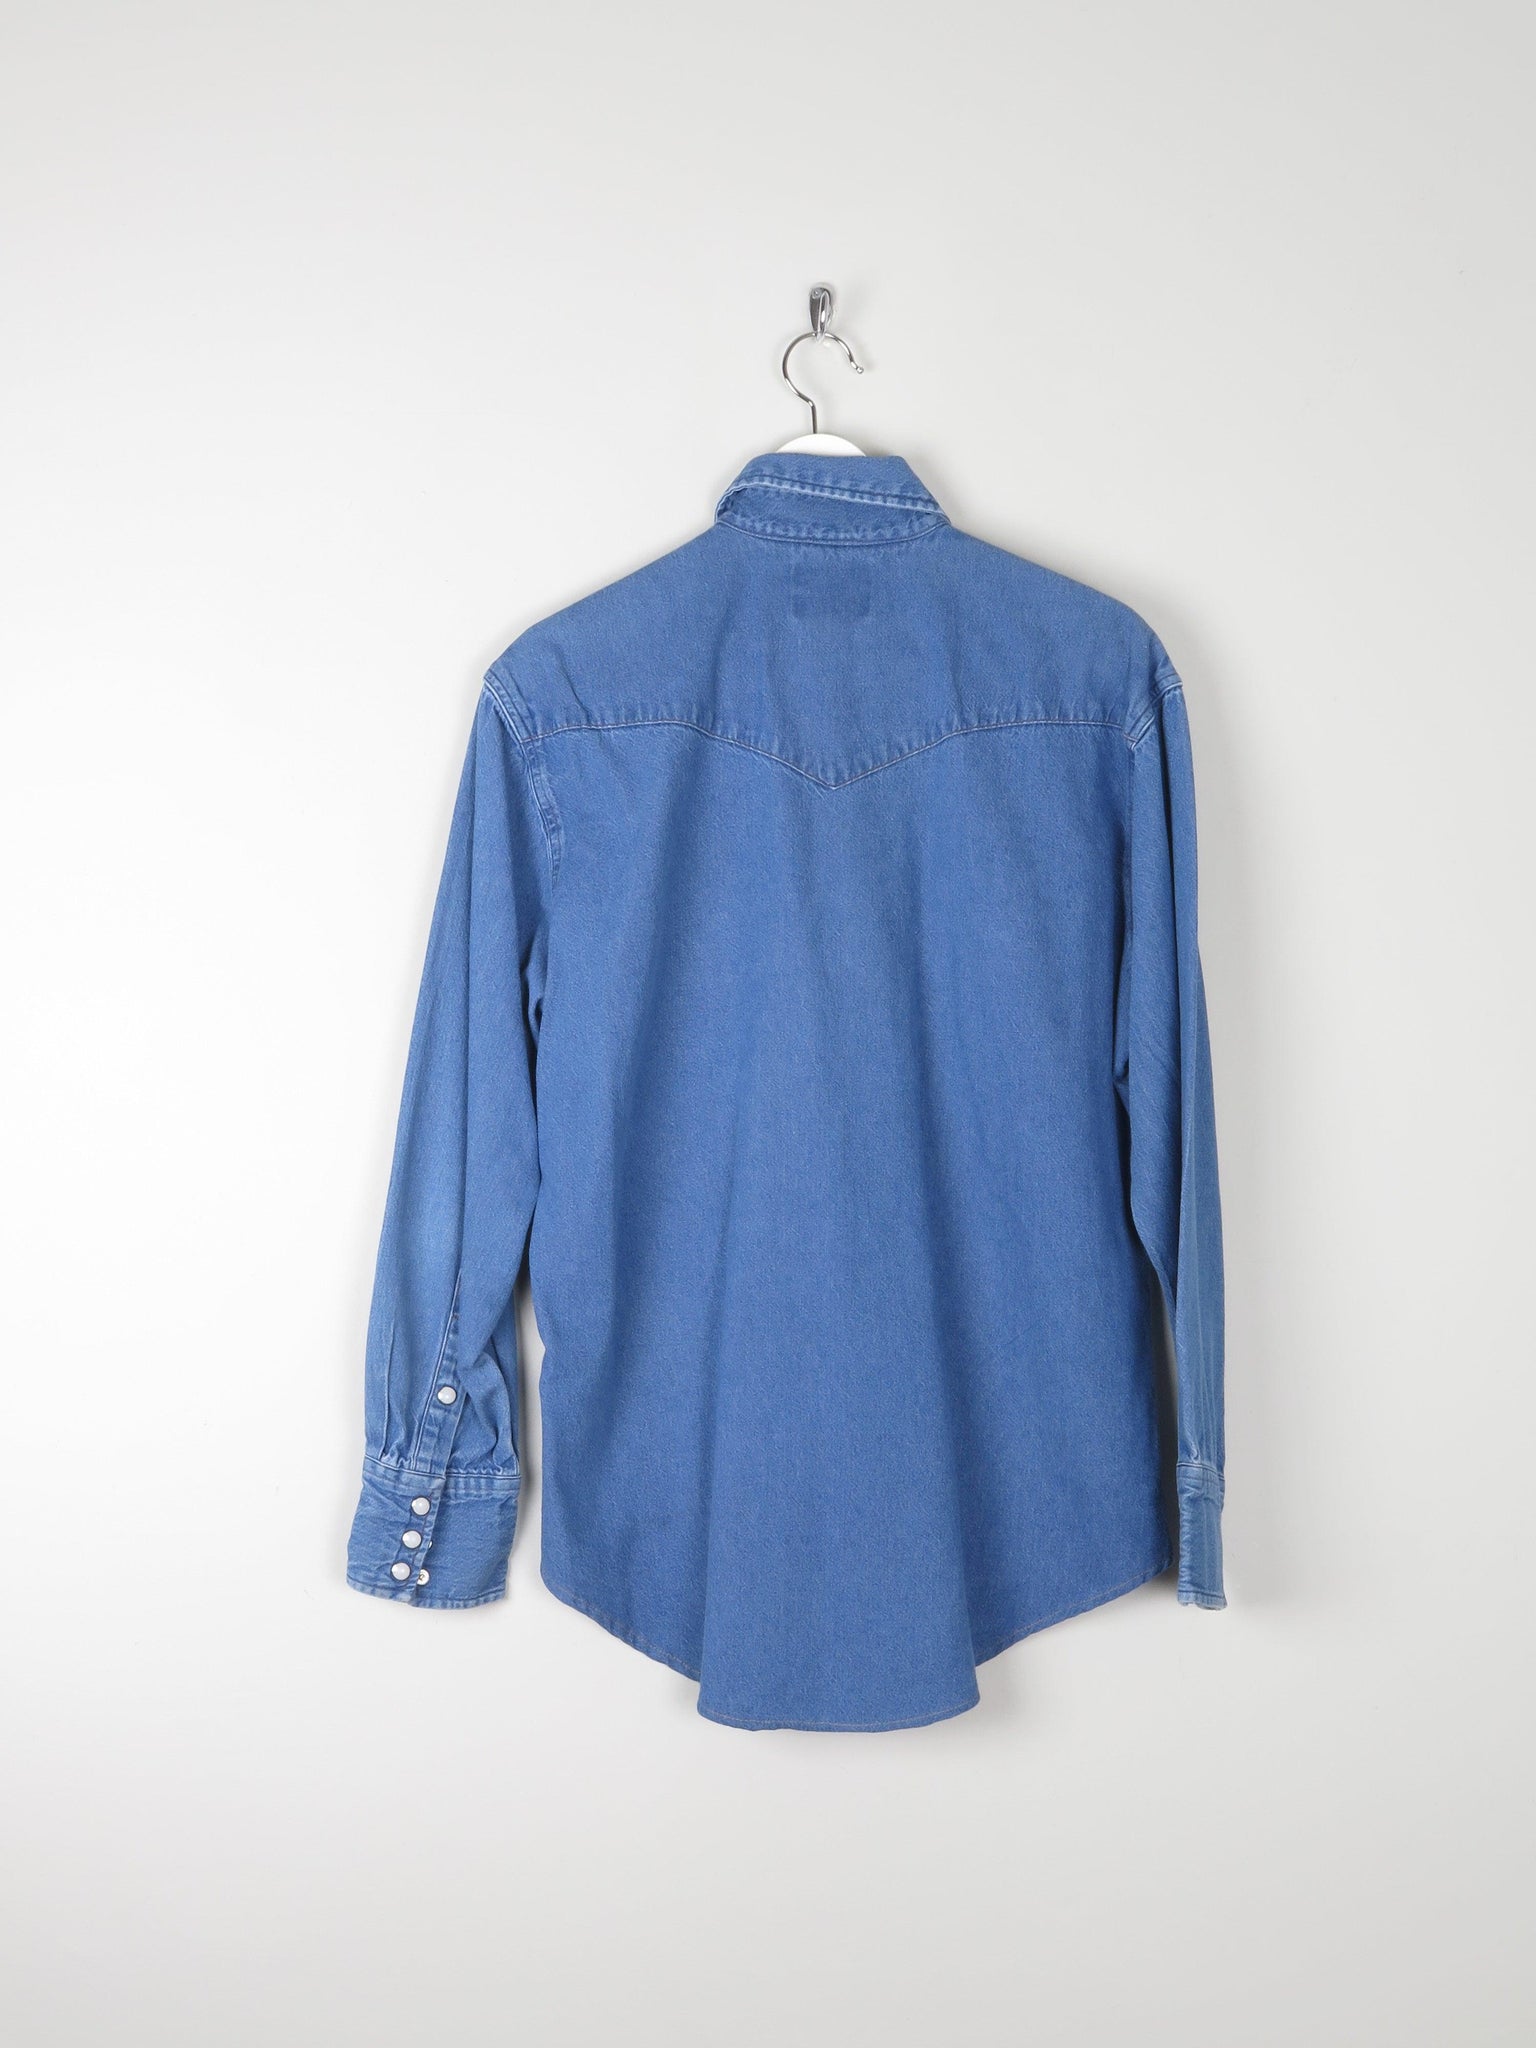 Men's Vintage Wrangler Denim Shirt M - The Harlequin